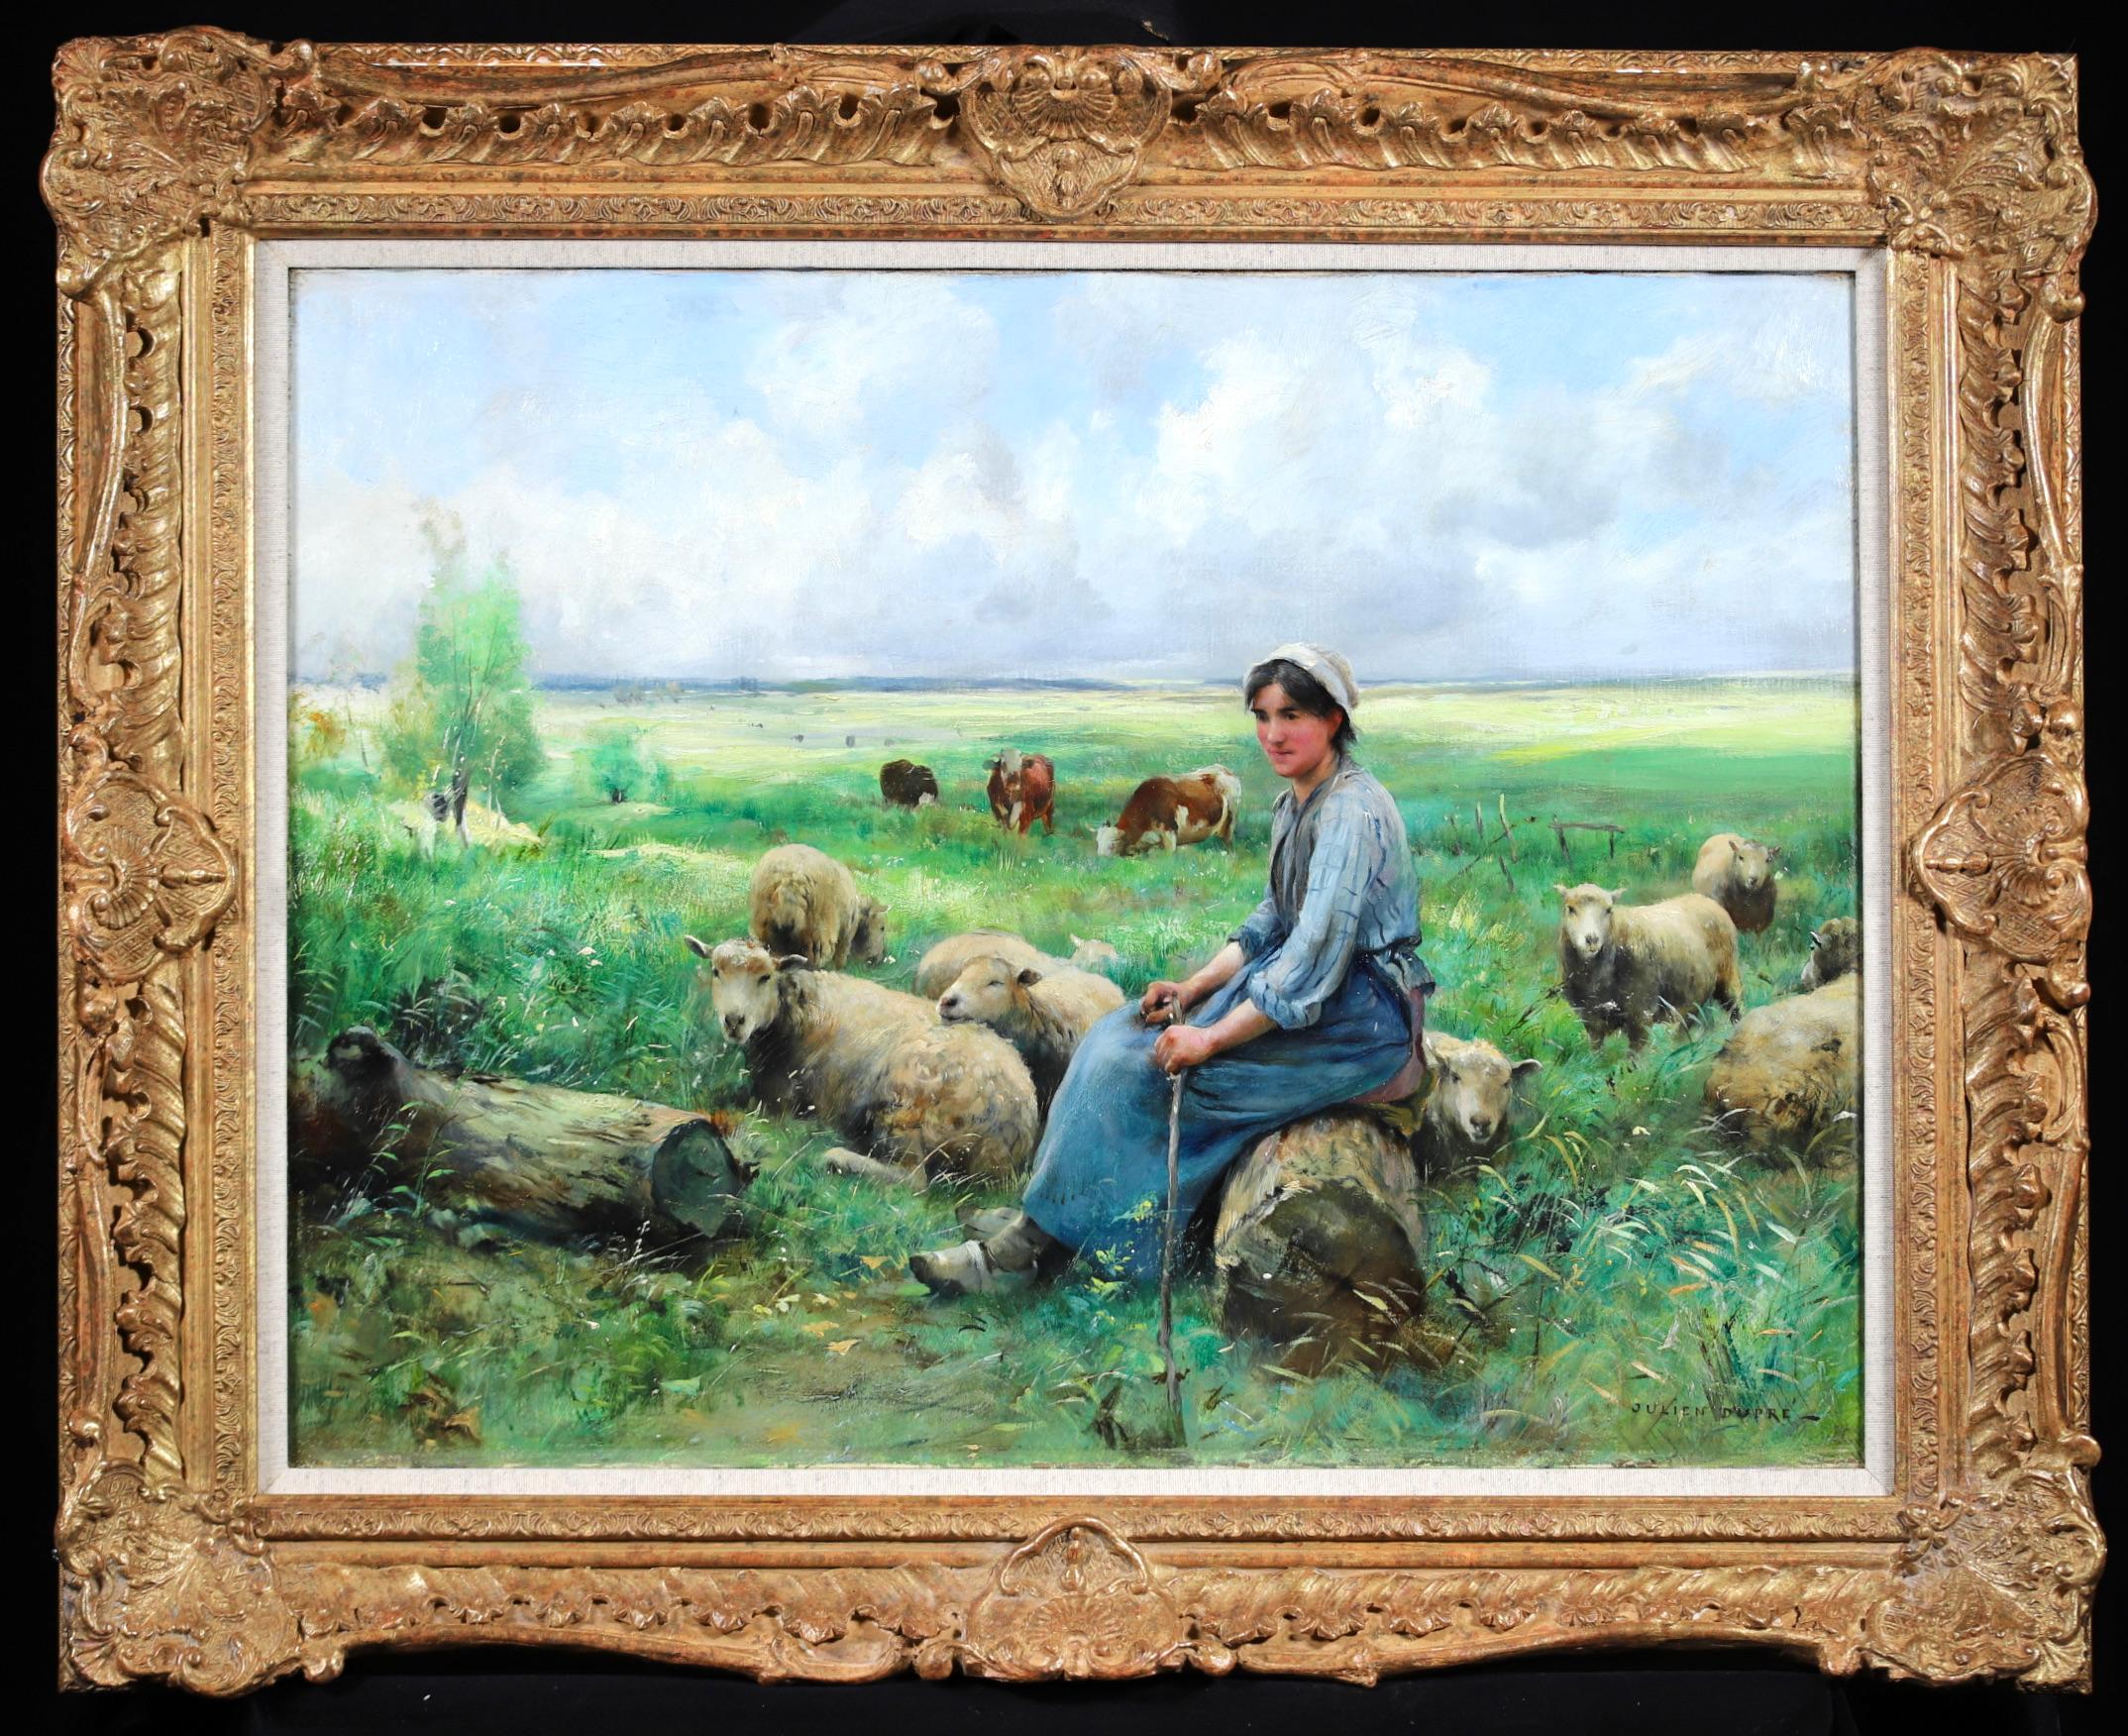 Signiert impressionistischen Öl auf Leinwand Figur und Tiere in der Landschaft von Französisch Maler Julien Dupre. Das Werk zeigt eine Hirtin, die sich auf einem Baumstamm ausruht, während ihre Schafe auf einer grünen Wiese grasen. In der Ferne sind